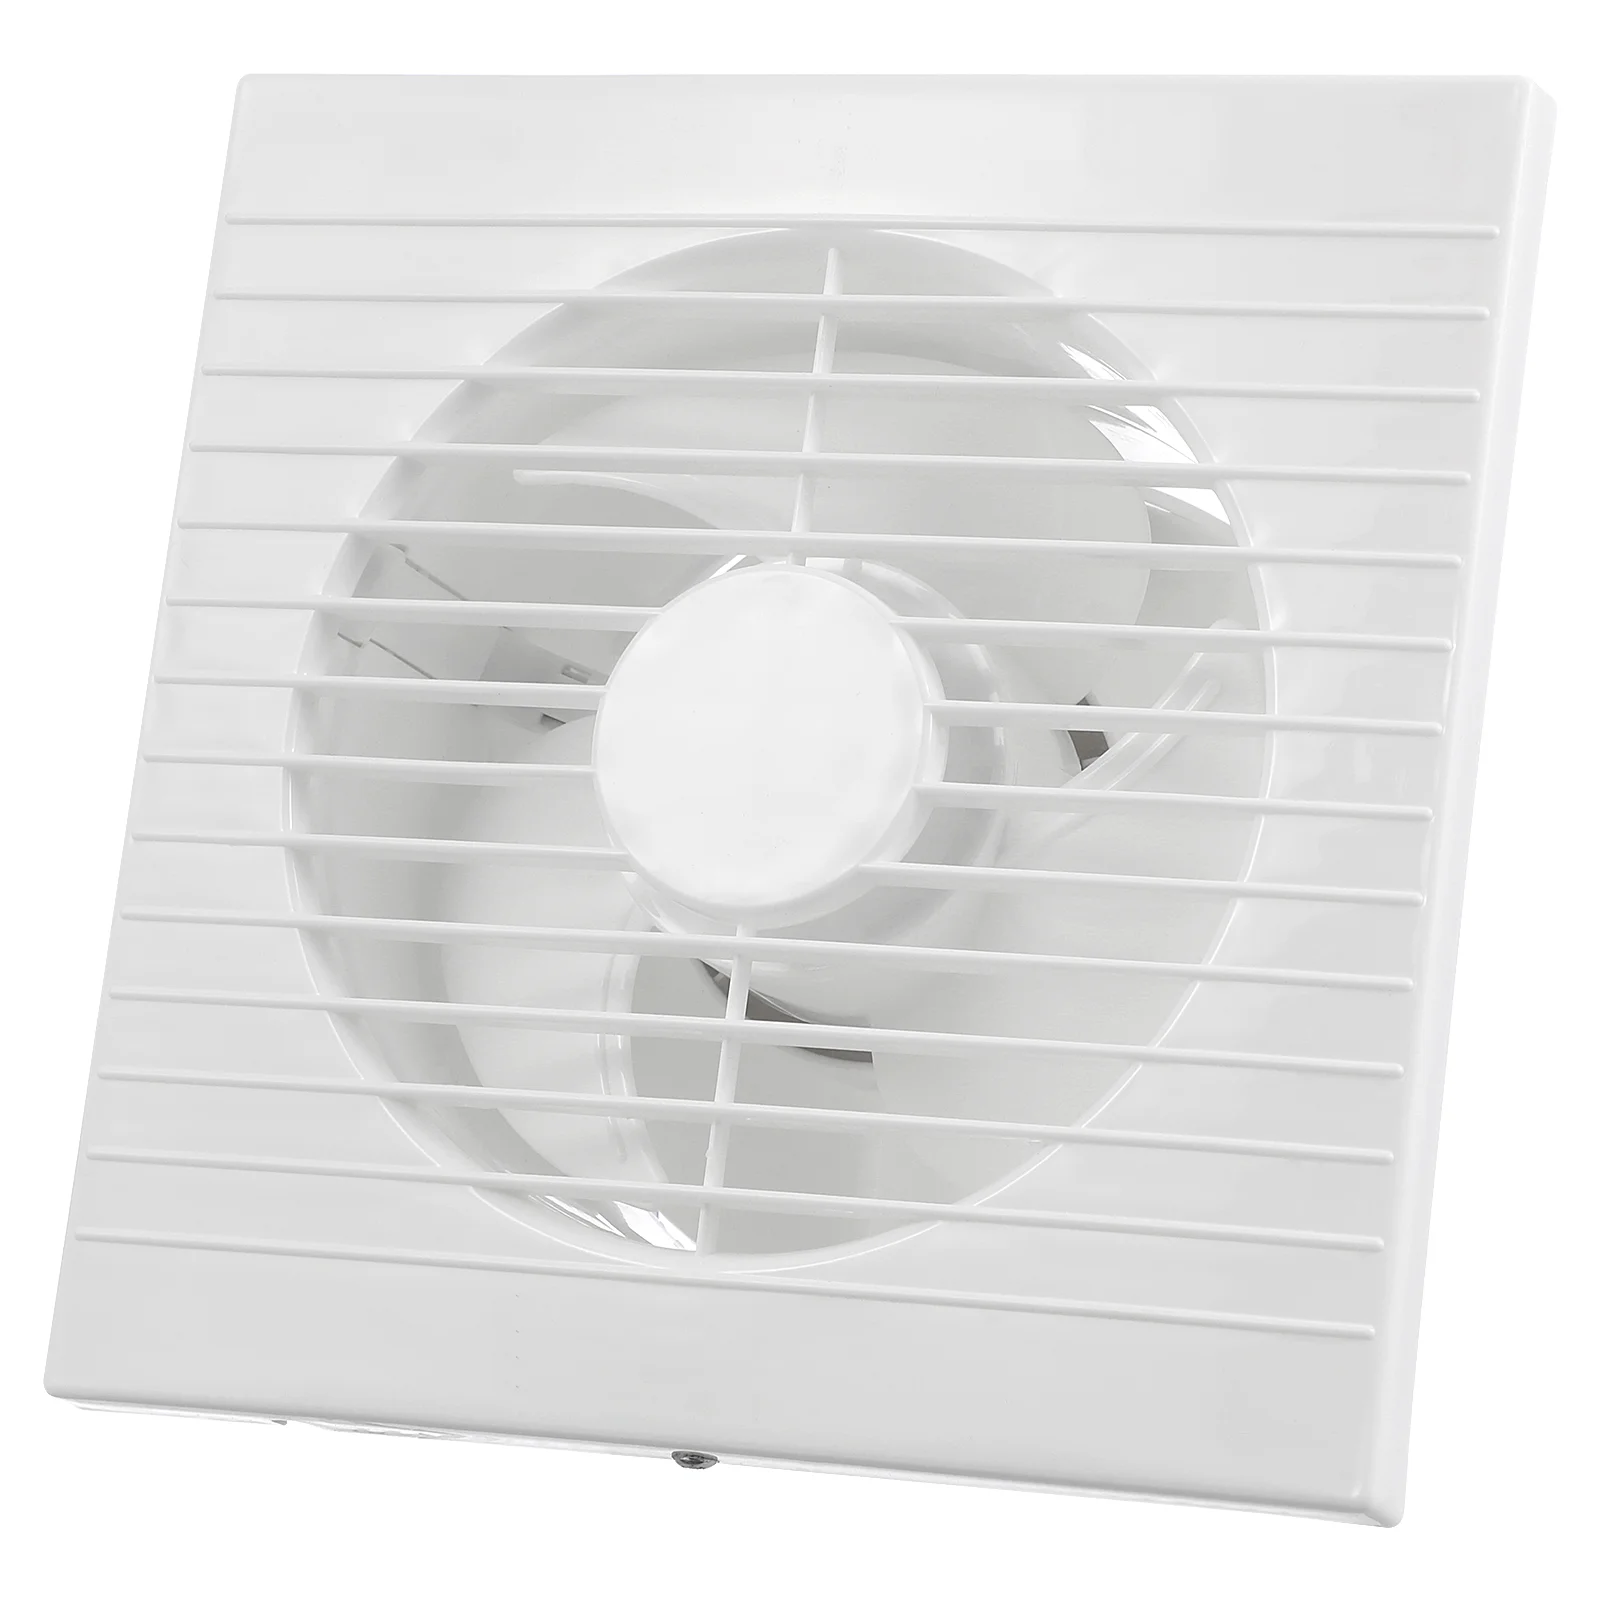 Ventilatore di scarico 110V ventilatore a parete aspiratore di ventilazione bagno cucina wc presa d'aria finestra ventilatore di scarico a parete spina americana